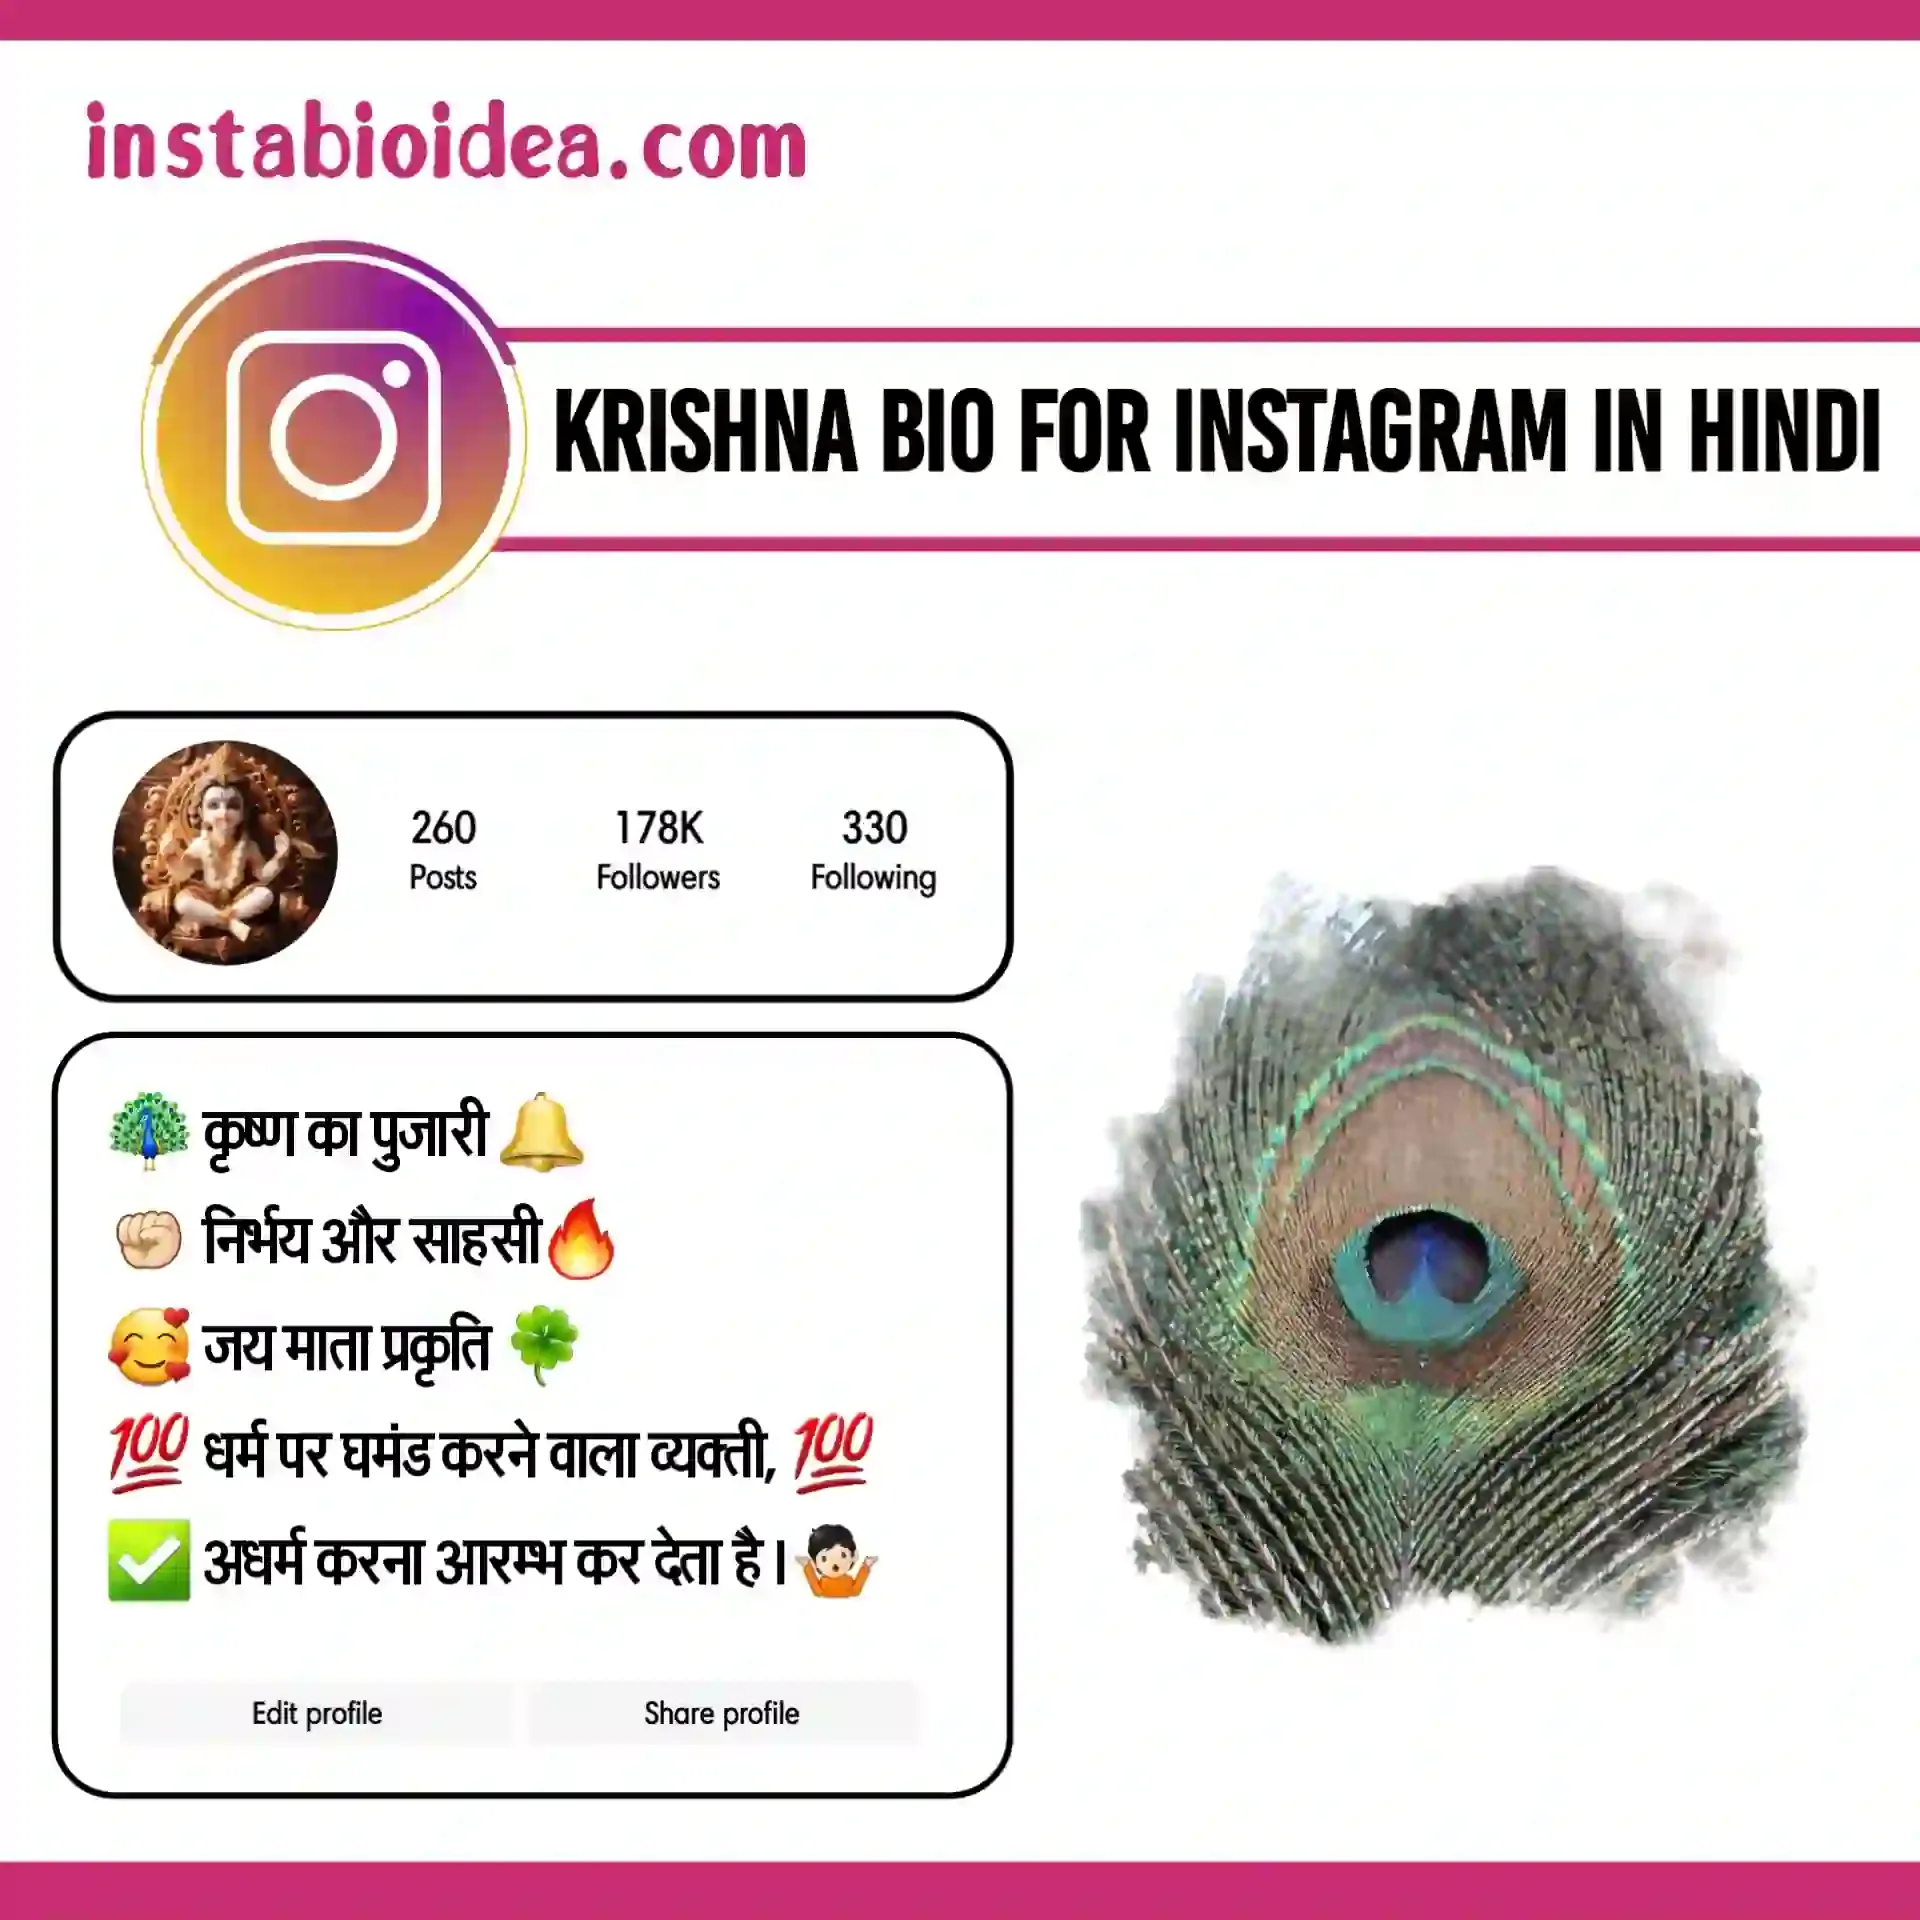 krishna bio for instagram in hindi image